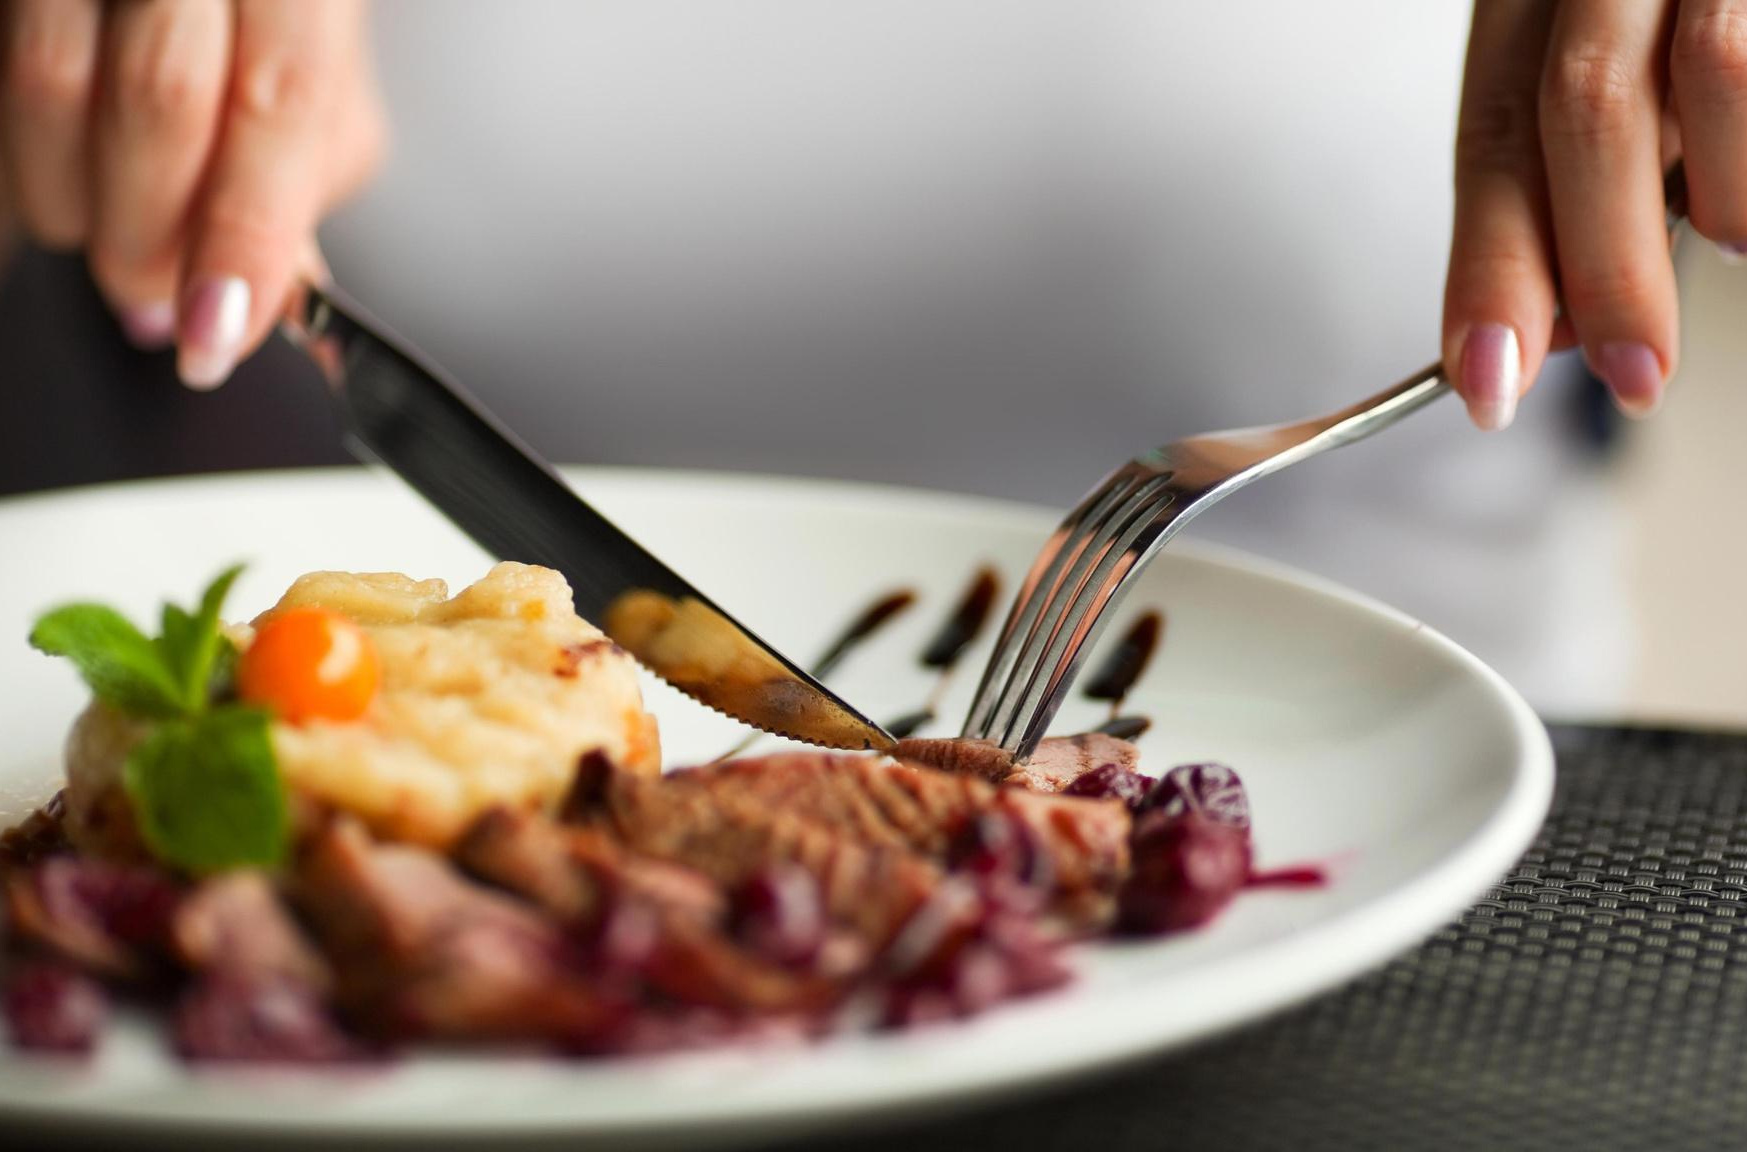 Еда с вилкой и ножом. Еда в ресторане. Тарелка с едой в руках. Кушать вилкой и ножом.